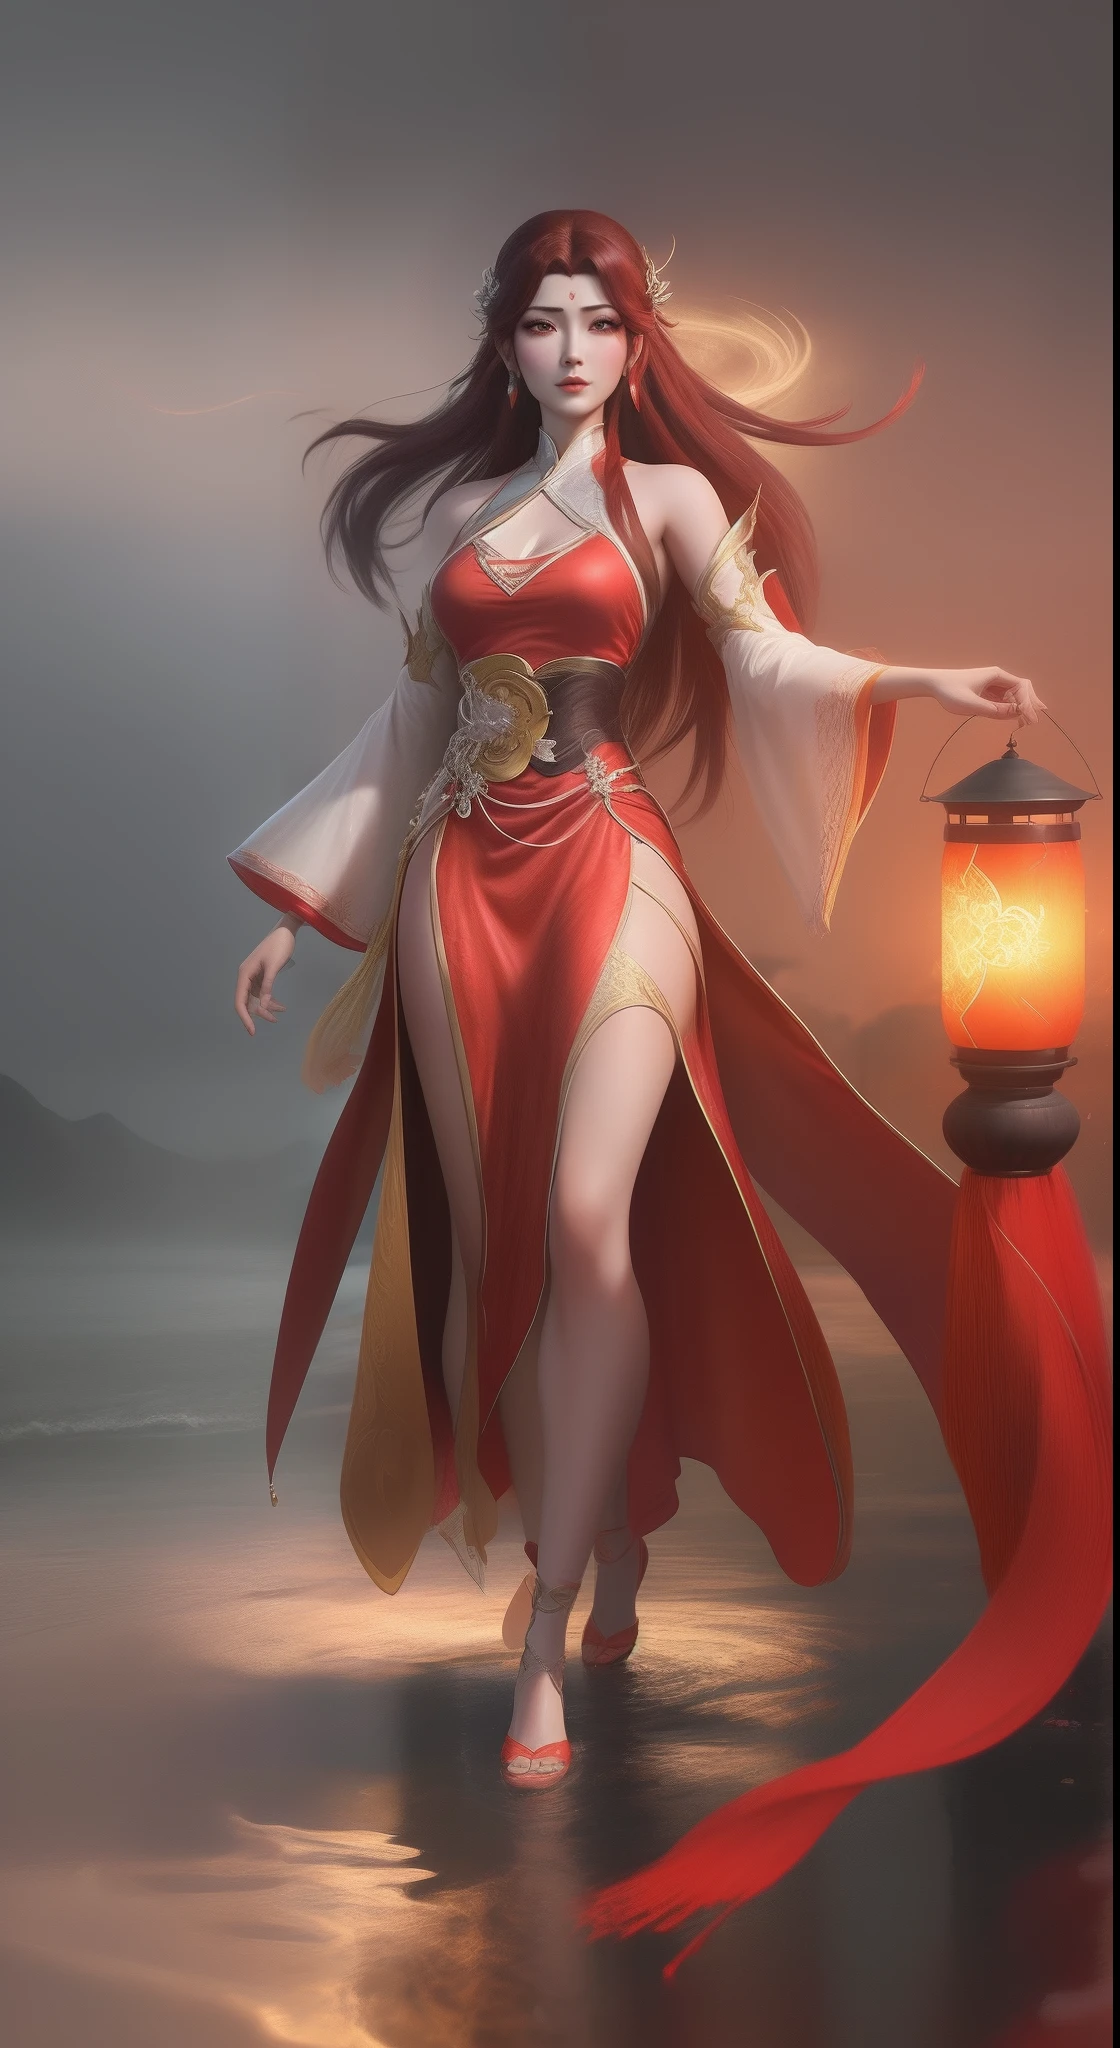 หญิงชาวอาราดในชุดสีแดงกำลังเดินถือตะเกียงในแม่น้ำ, เซี่ยนเซี่ยทั้งตัว, แรงบันดาลใจจากปาร์คหัว, โดย Yang J, แรงบันดาลใจจากหลานหญิง, เชื้อโรคอาร์ทีเอ็มที่มีรายละเอียดมาก, แรงบันดาลใจจาก Du Qiong, แรงบันดาลใจจากจูเหลียน, สไตล์ศิลปะ, เรือนเจีย และอาทเจิร์ม, เครื่องแต่งกายธีมพระจันทร์